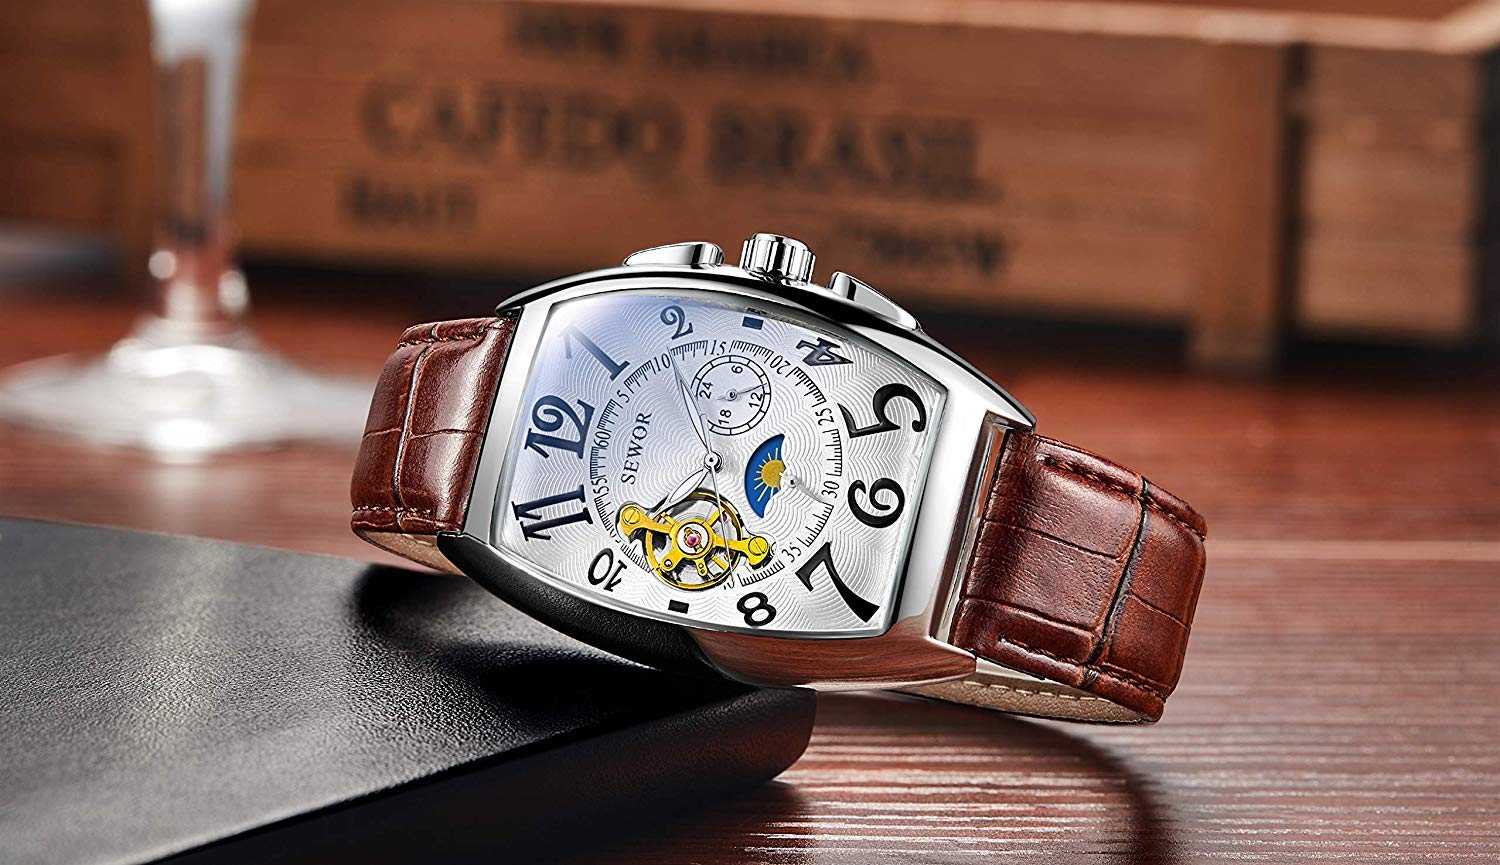 SEWOR Luxury Tourbillon Herren Mondphase automatische mechanische Armbanduhr Lederband Glasbeschichtung blau